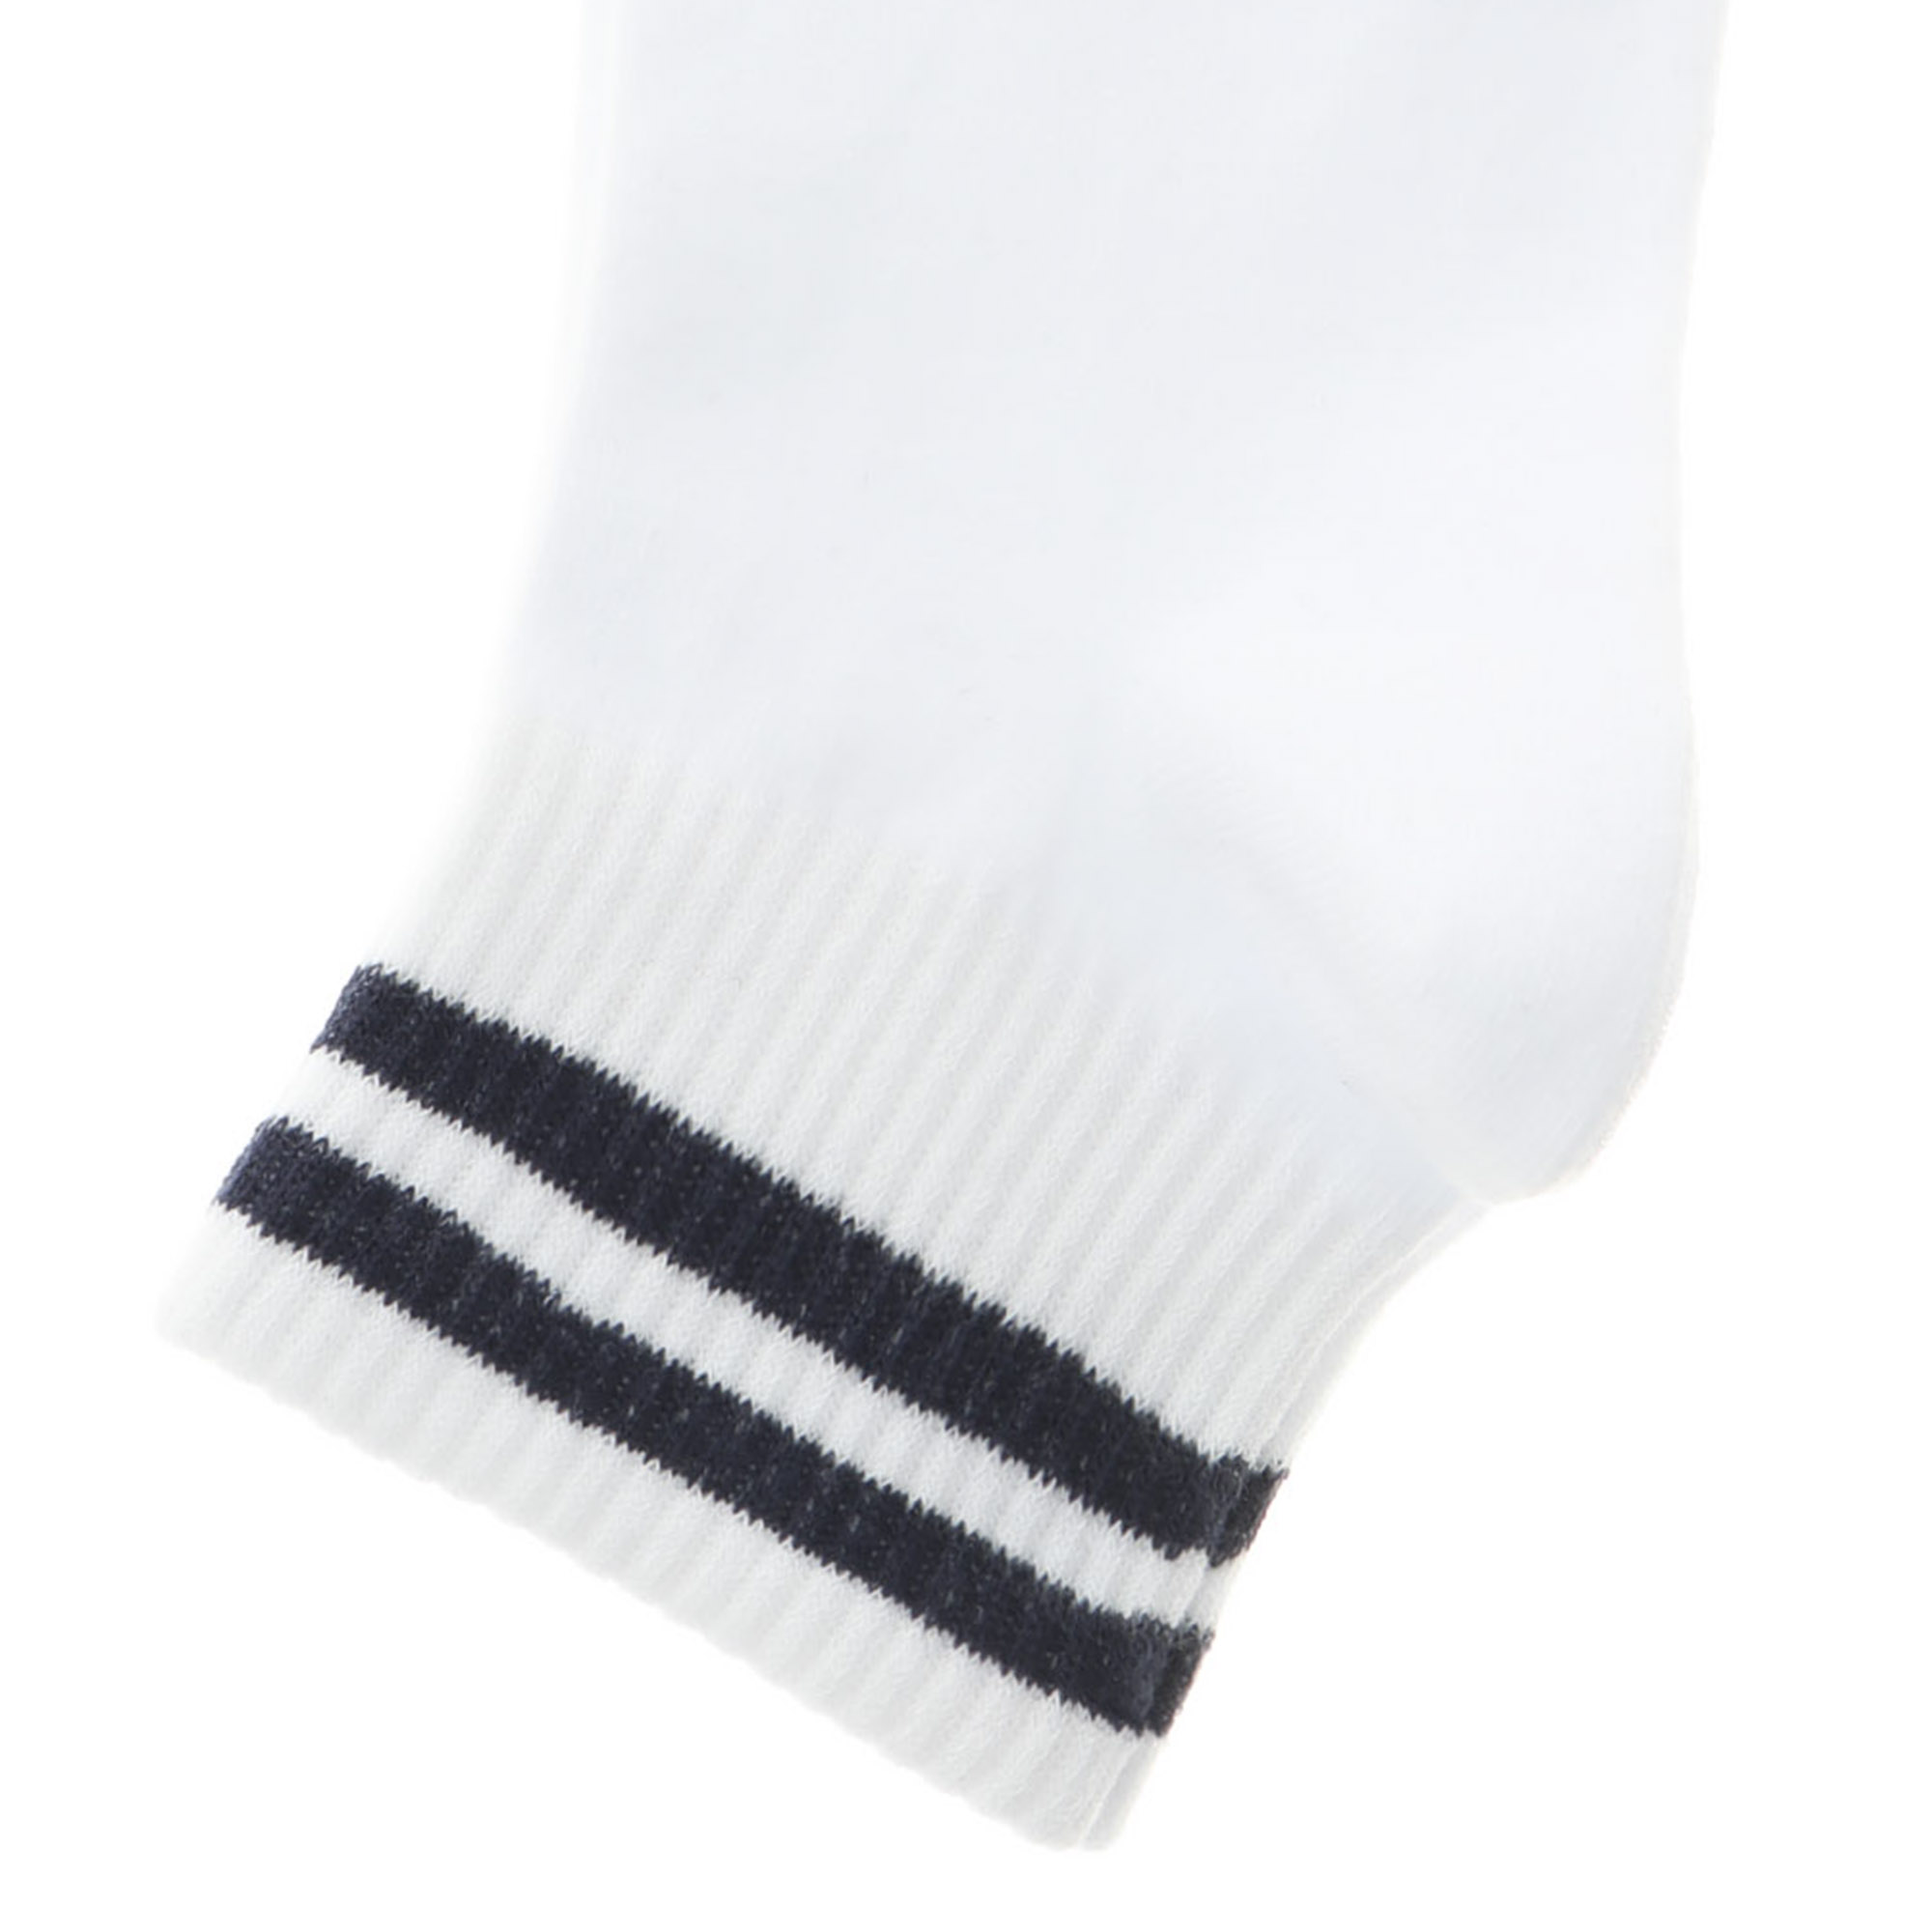 фото Носки женские однотонные укороченные lucky socks белые 23-25